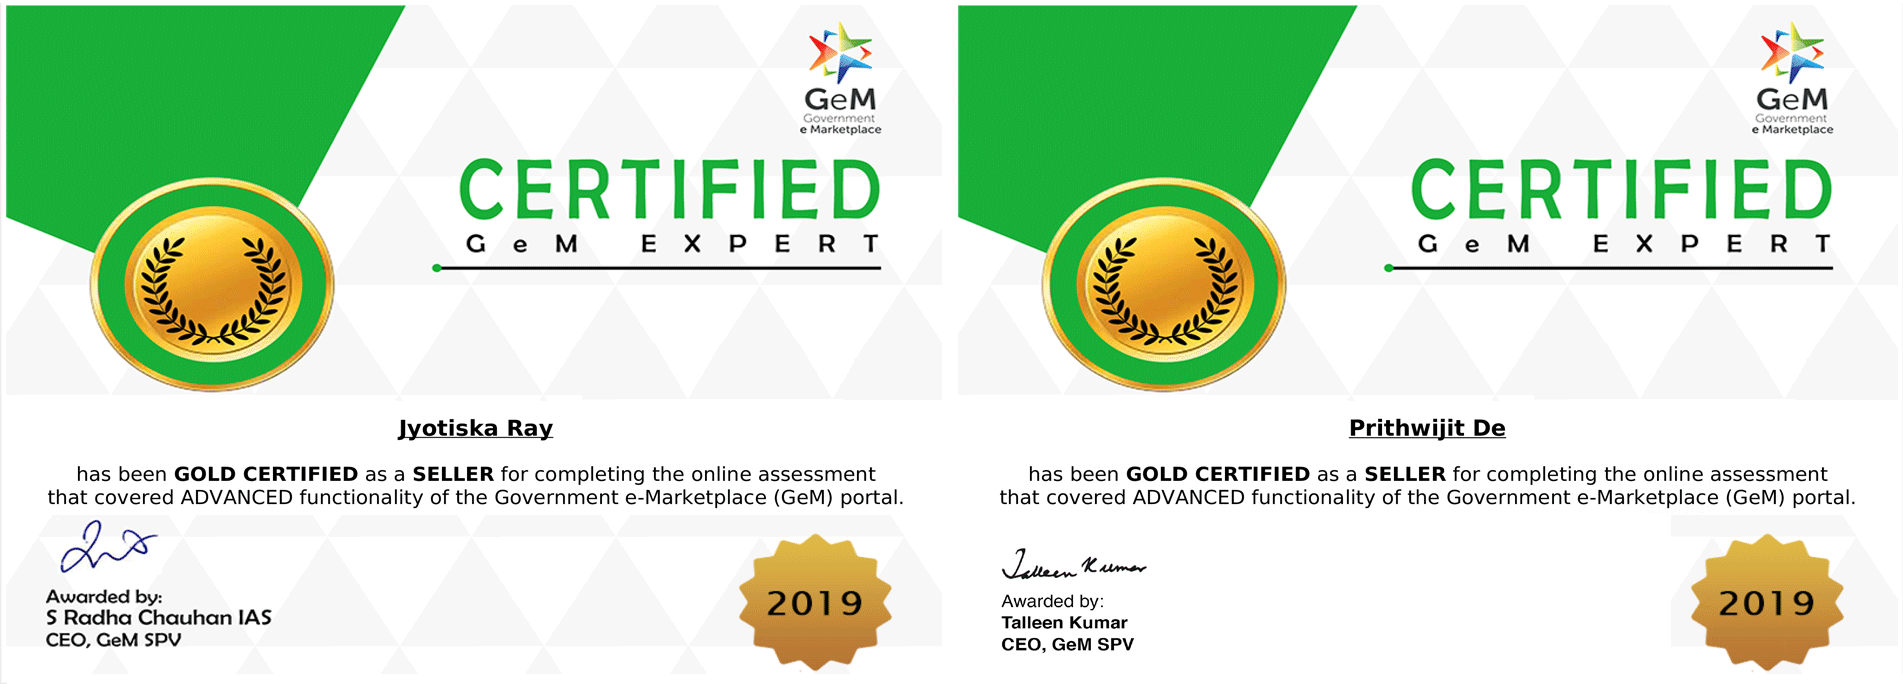 Certificated-Gem-Expert-CLIQUE